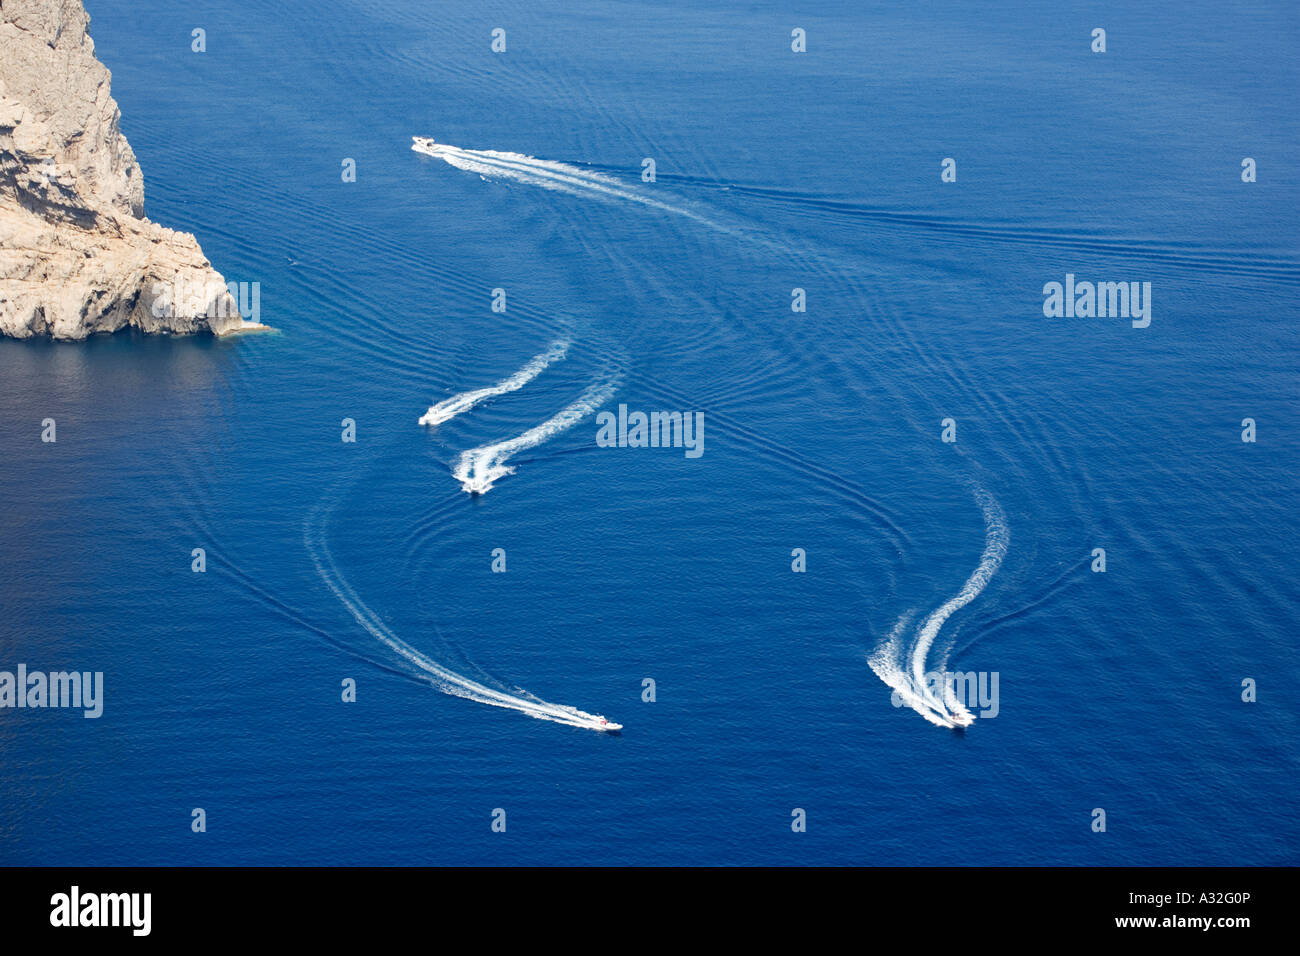 Der erwacht von Motorbooten verlassen Muster in das tiefblaue Meer von Formentor auf Mallorca Stockfoto